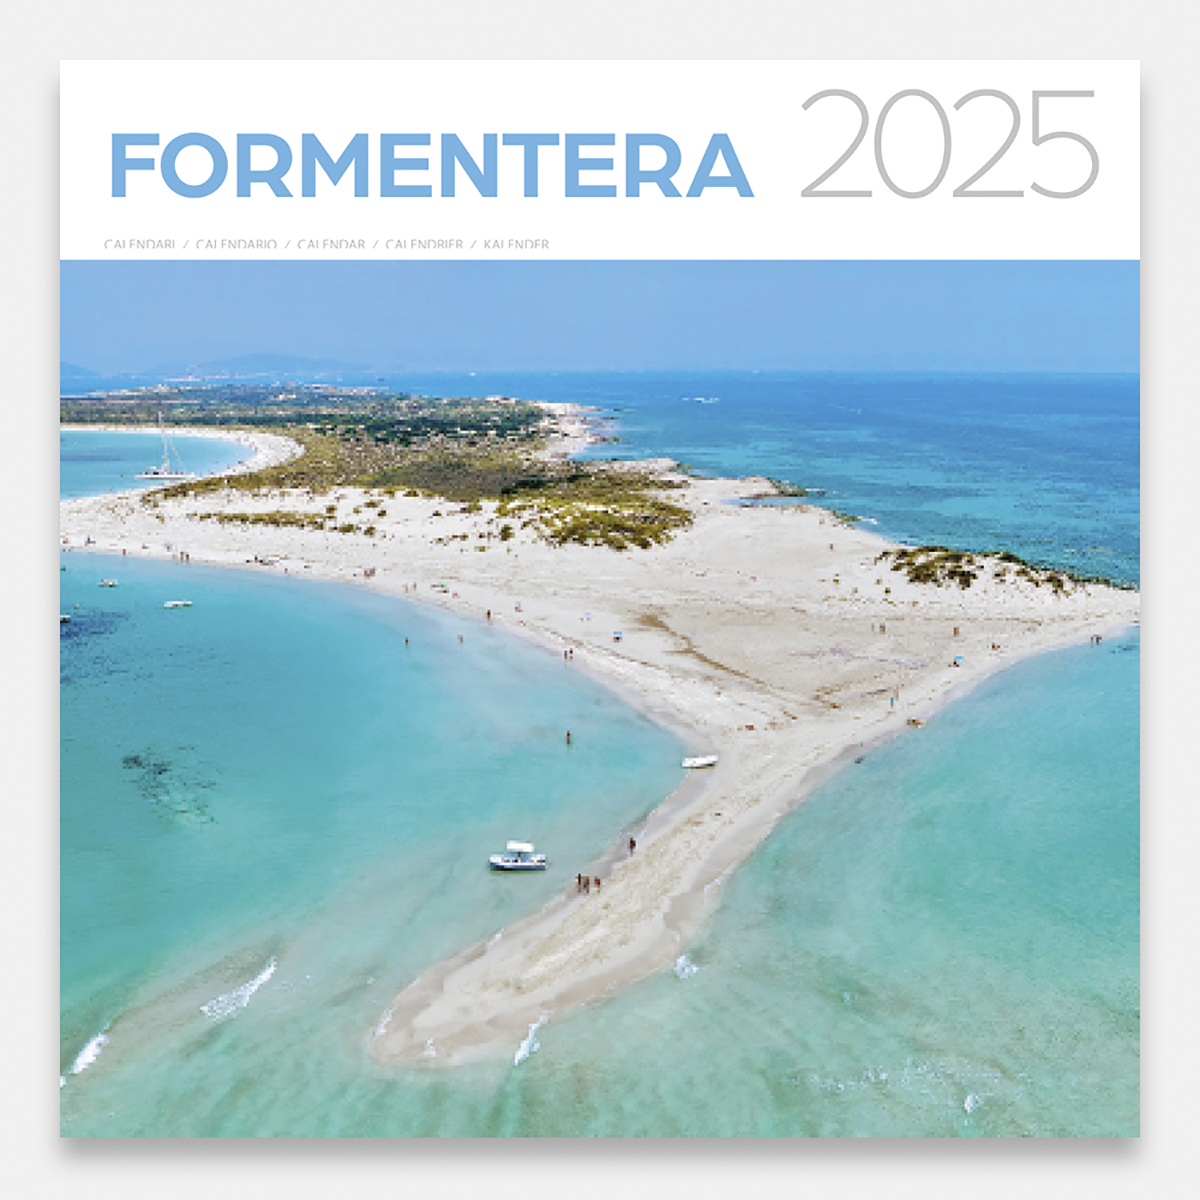 Calendrier 2025 Formentera 25forg calendario pared 2025 formentera